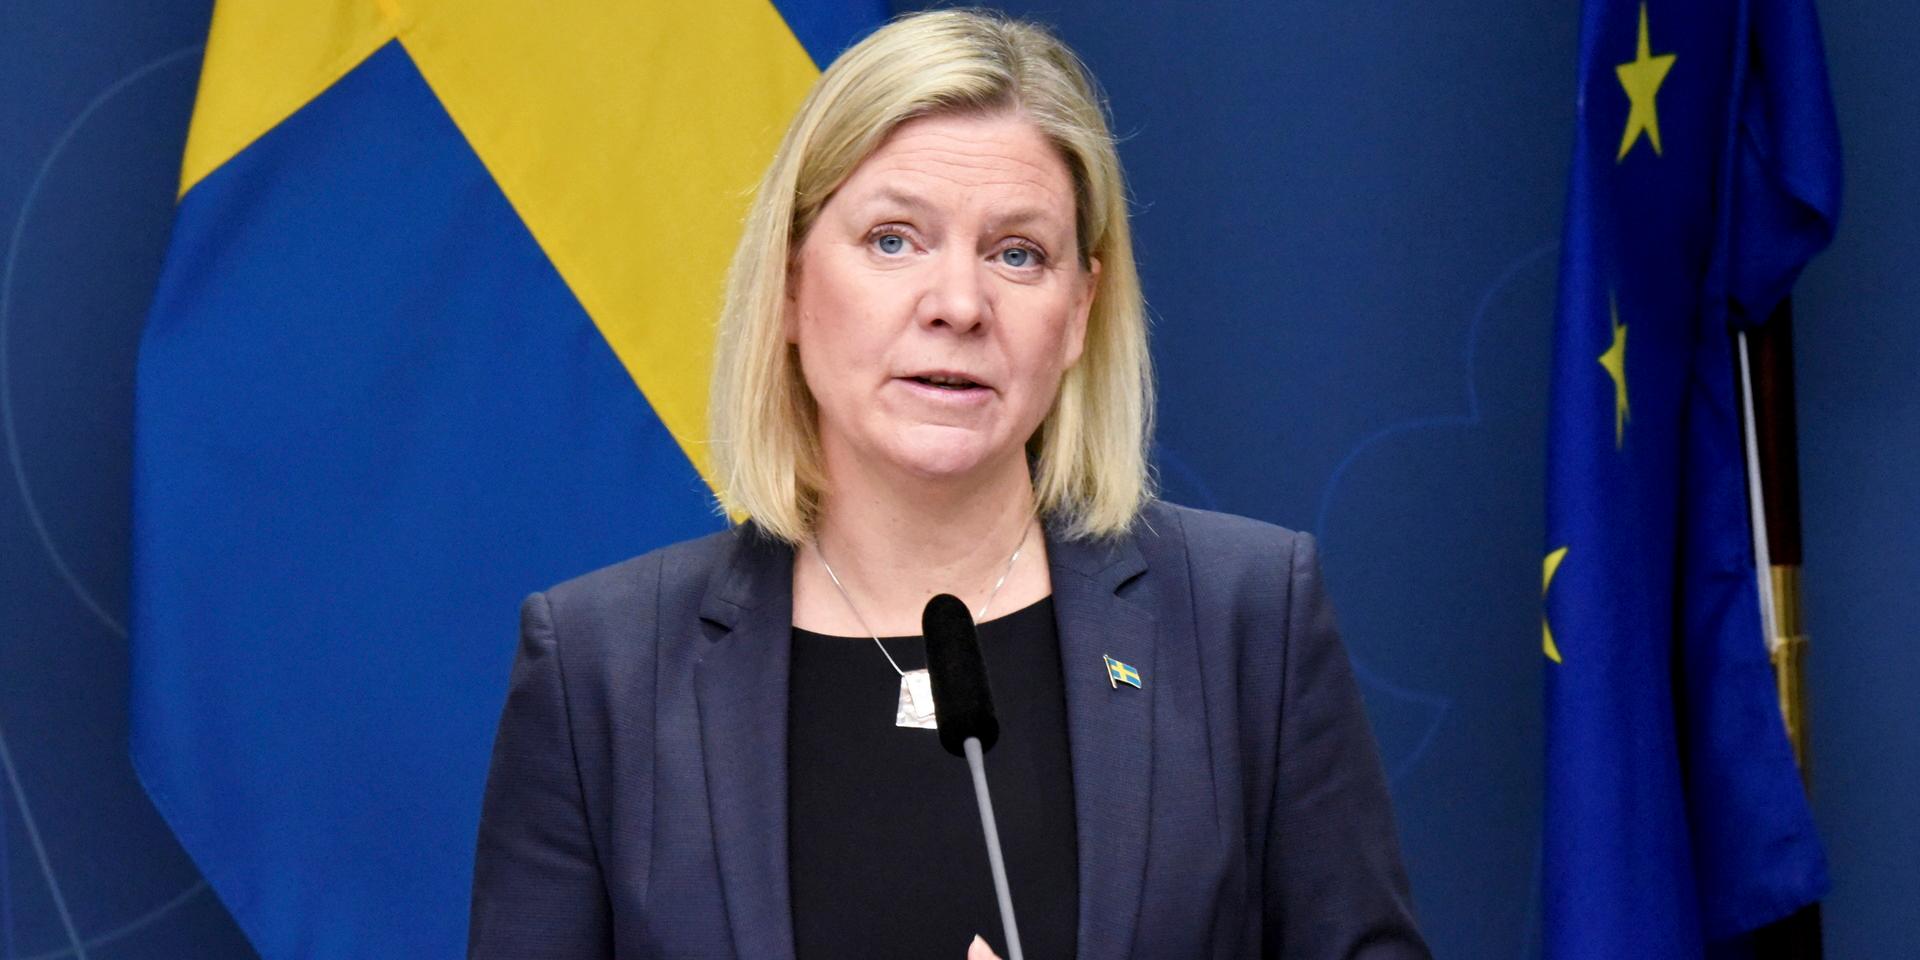 Statsminister Magdalena Andersson (S) presenterar nya restriktioner under pressträffen i Rosenbad.